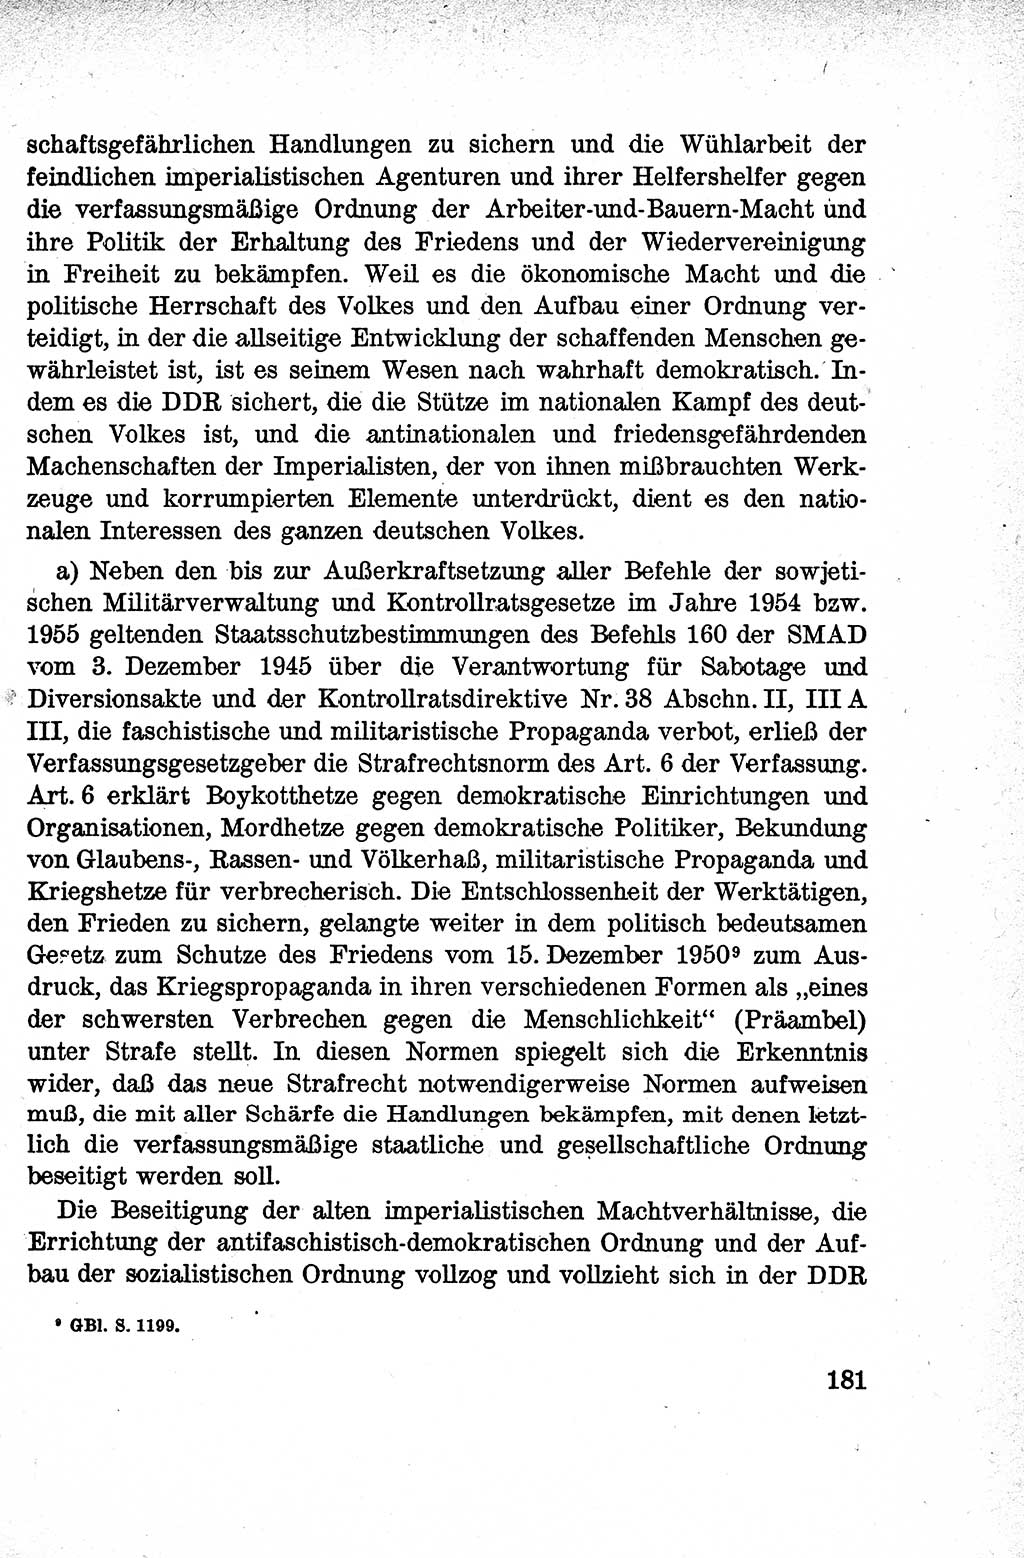 Lehrbuch des Strafrechts der Deutschen Demokratischen Republik (DDR), Allgemeiner Teil 1959, Seite 181 (Lb. Strafr. DDR AT 1959, S. 181)